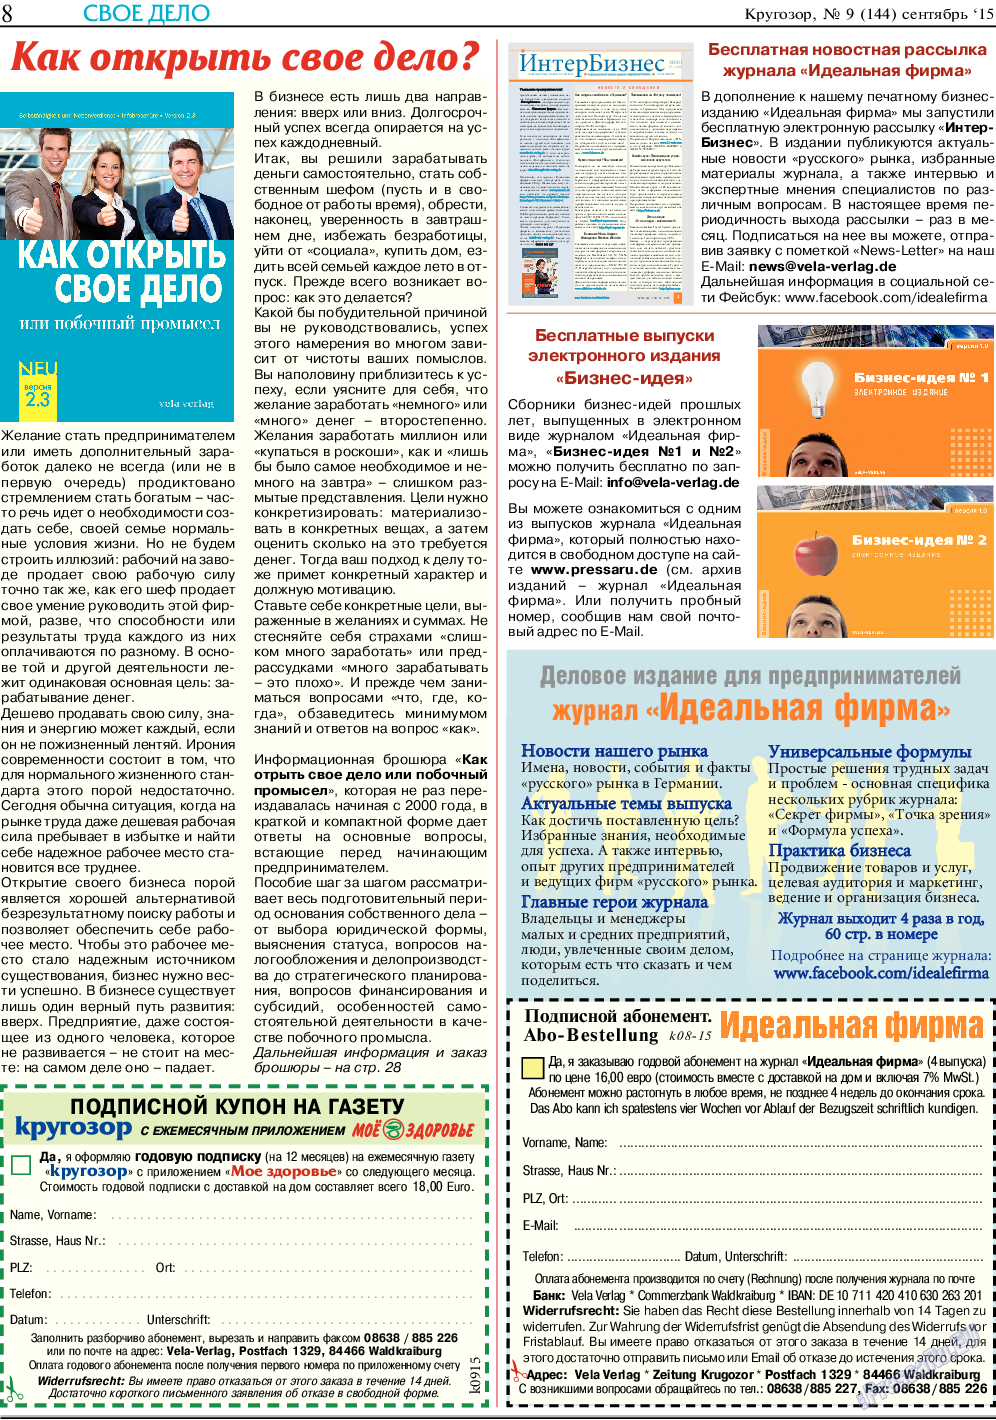 Кругозор (газета). 2015 год, номер 9, стр. 8